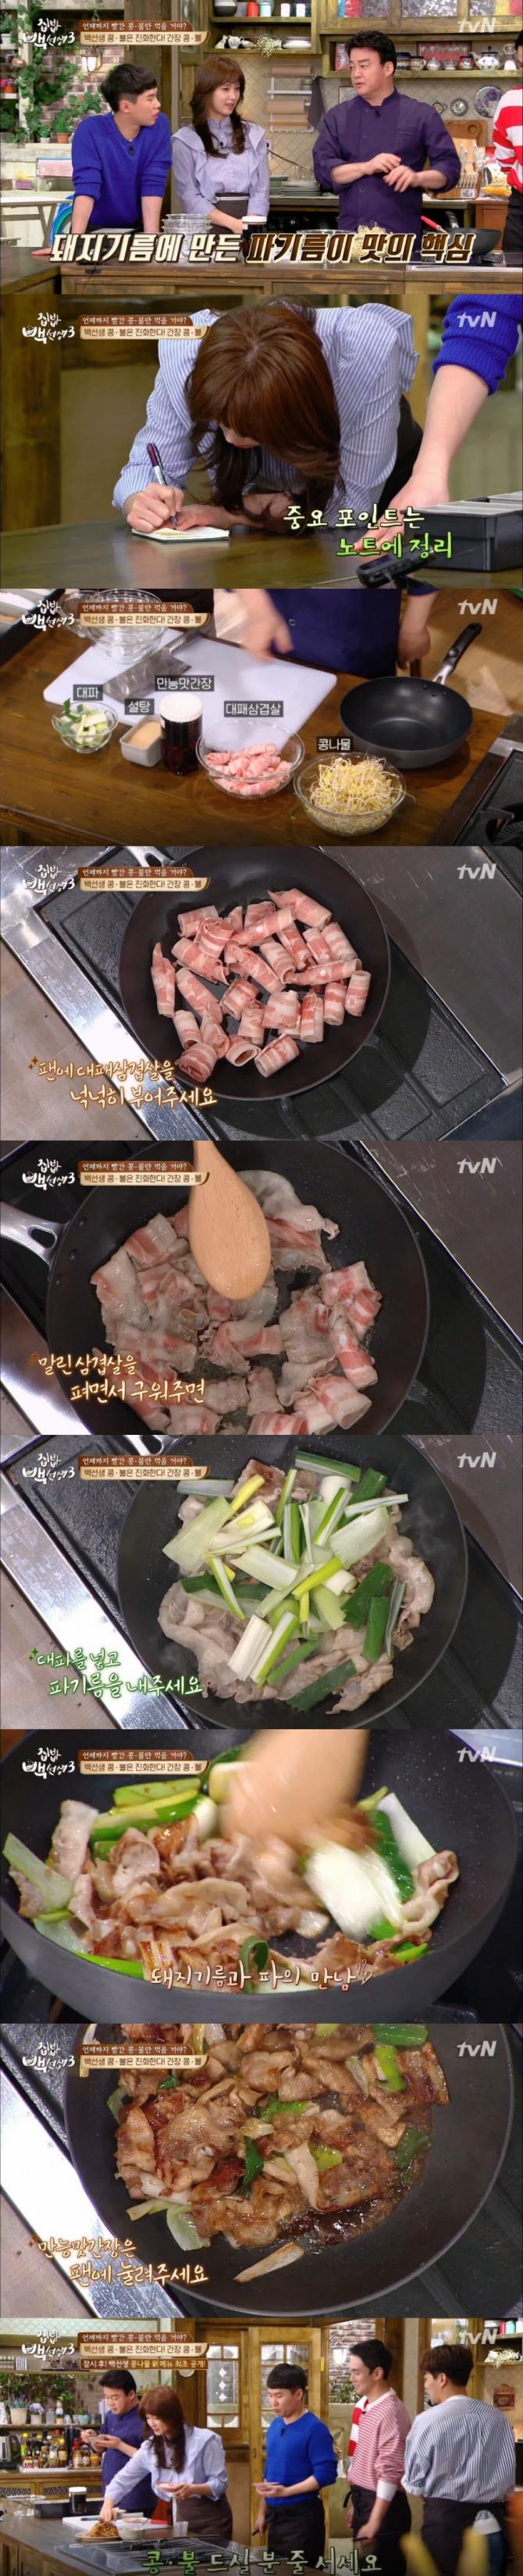 7일 방송된 tvN '집밥 백선생3'에서 백종원은 이번 시즌 신메뉴로 '간장 콩나물불고기'를 선보였다./사진=tvN 방송 캡처